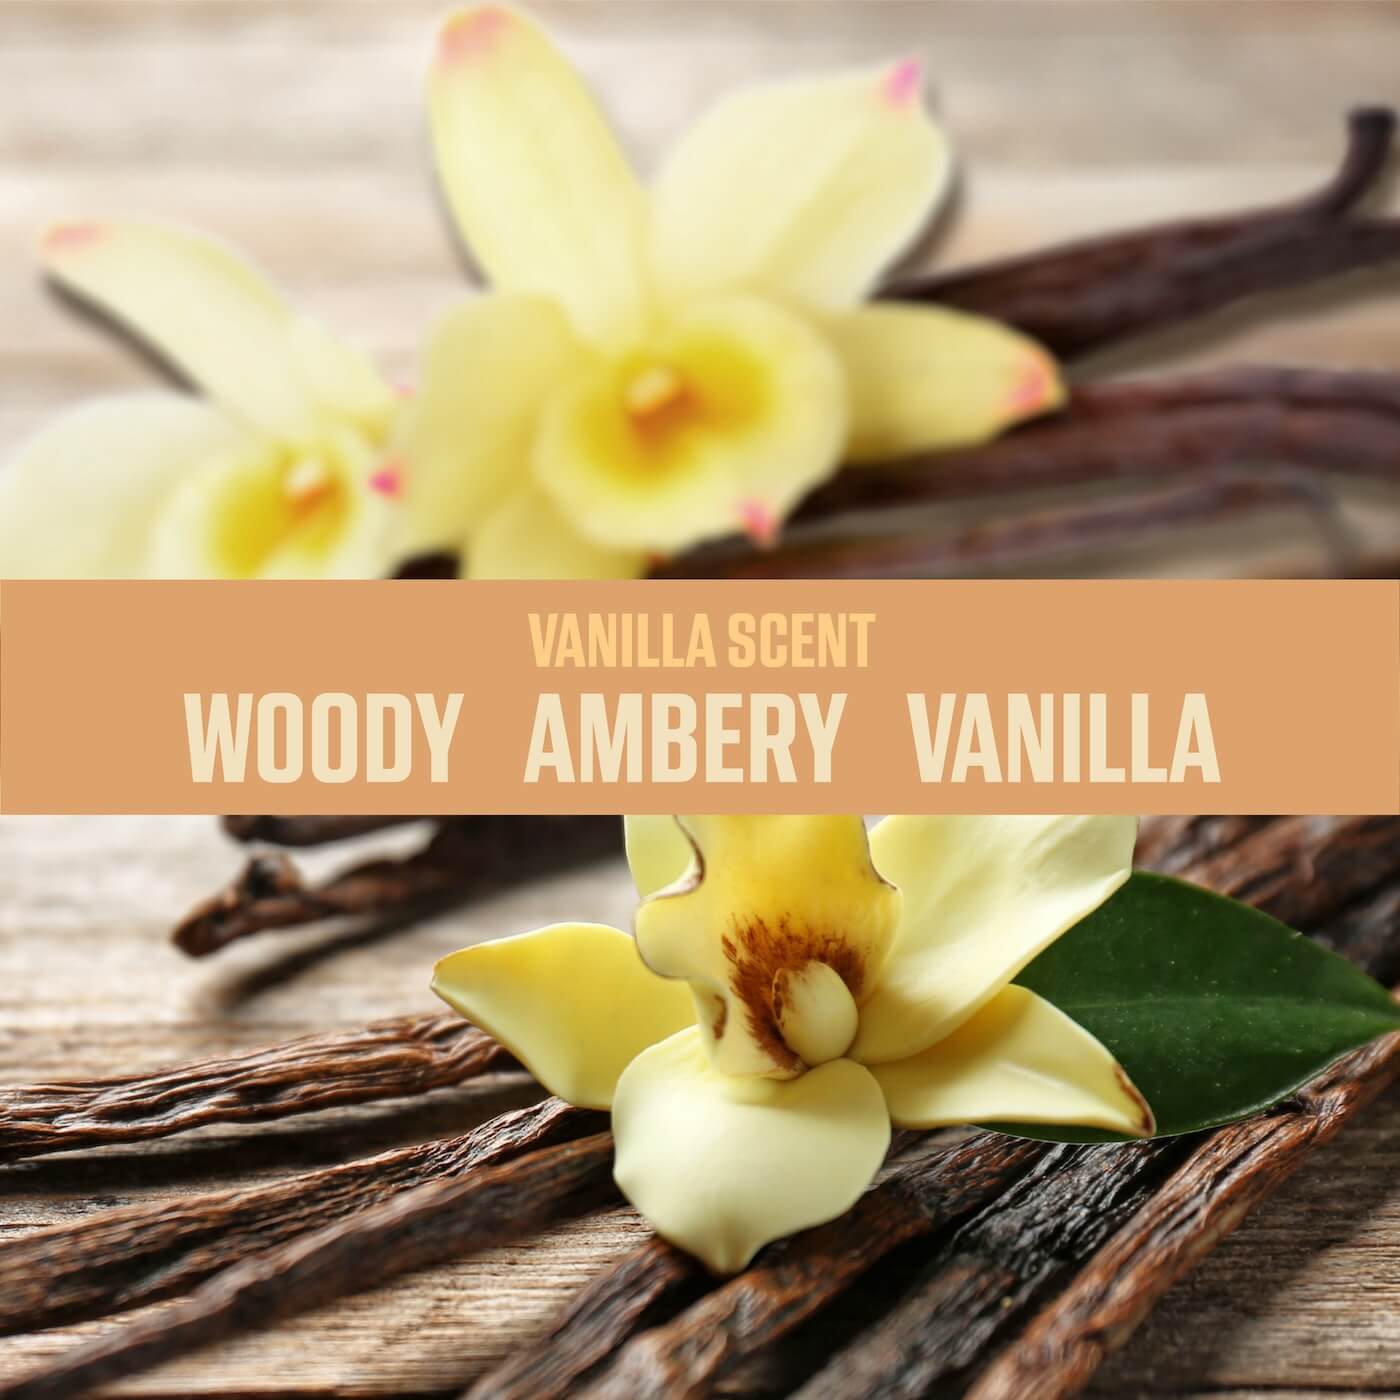 Vanilla scent: Woody, Ambery and Vanilla 